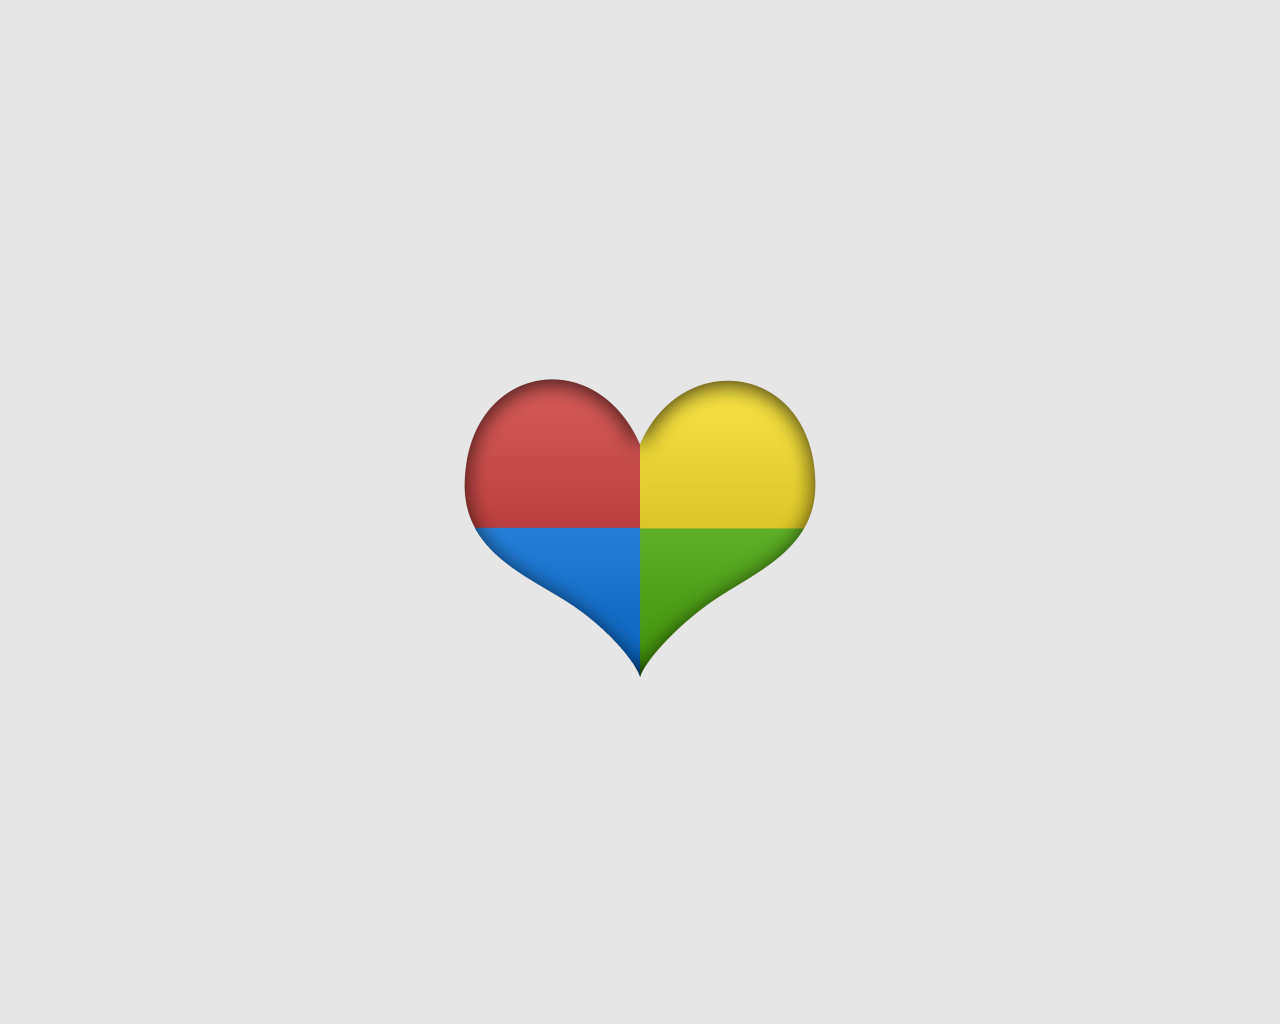 Das Google Heart Wallpaper 1280x1024